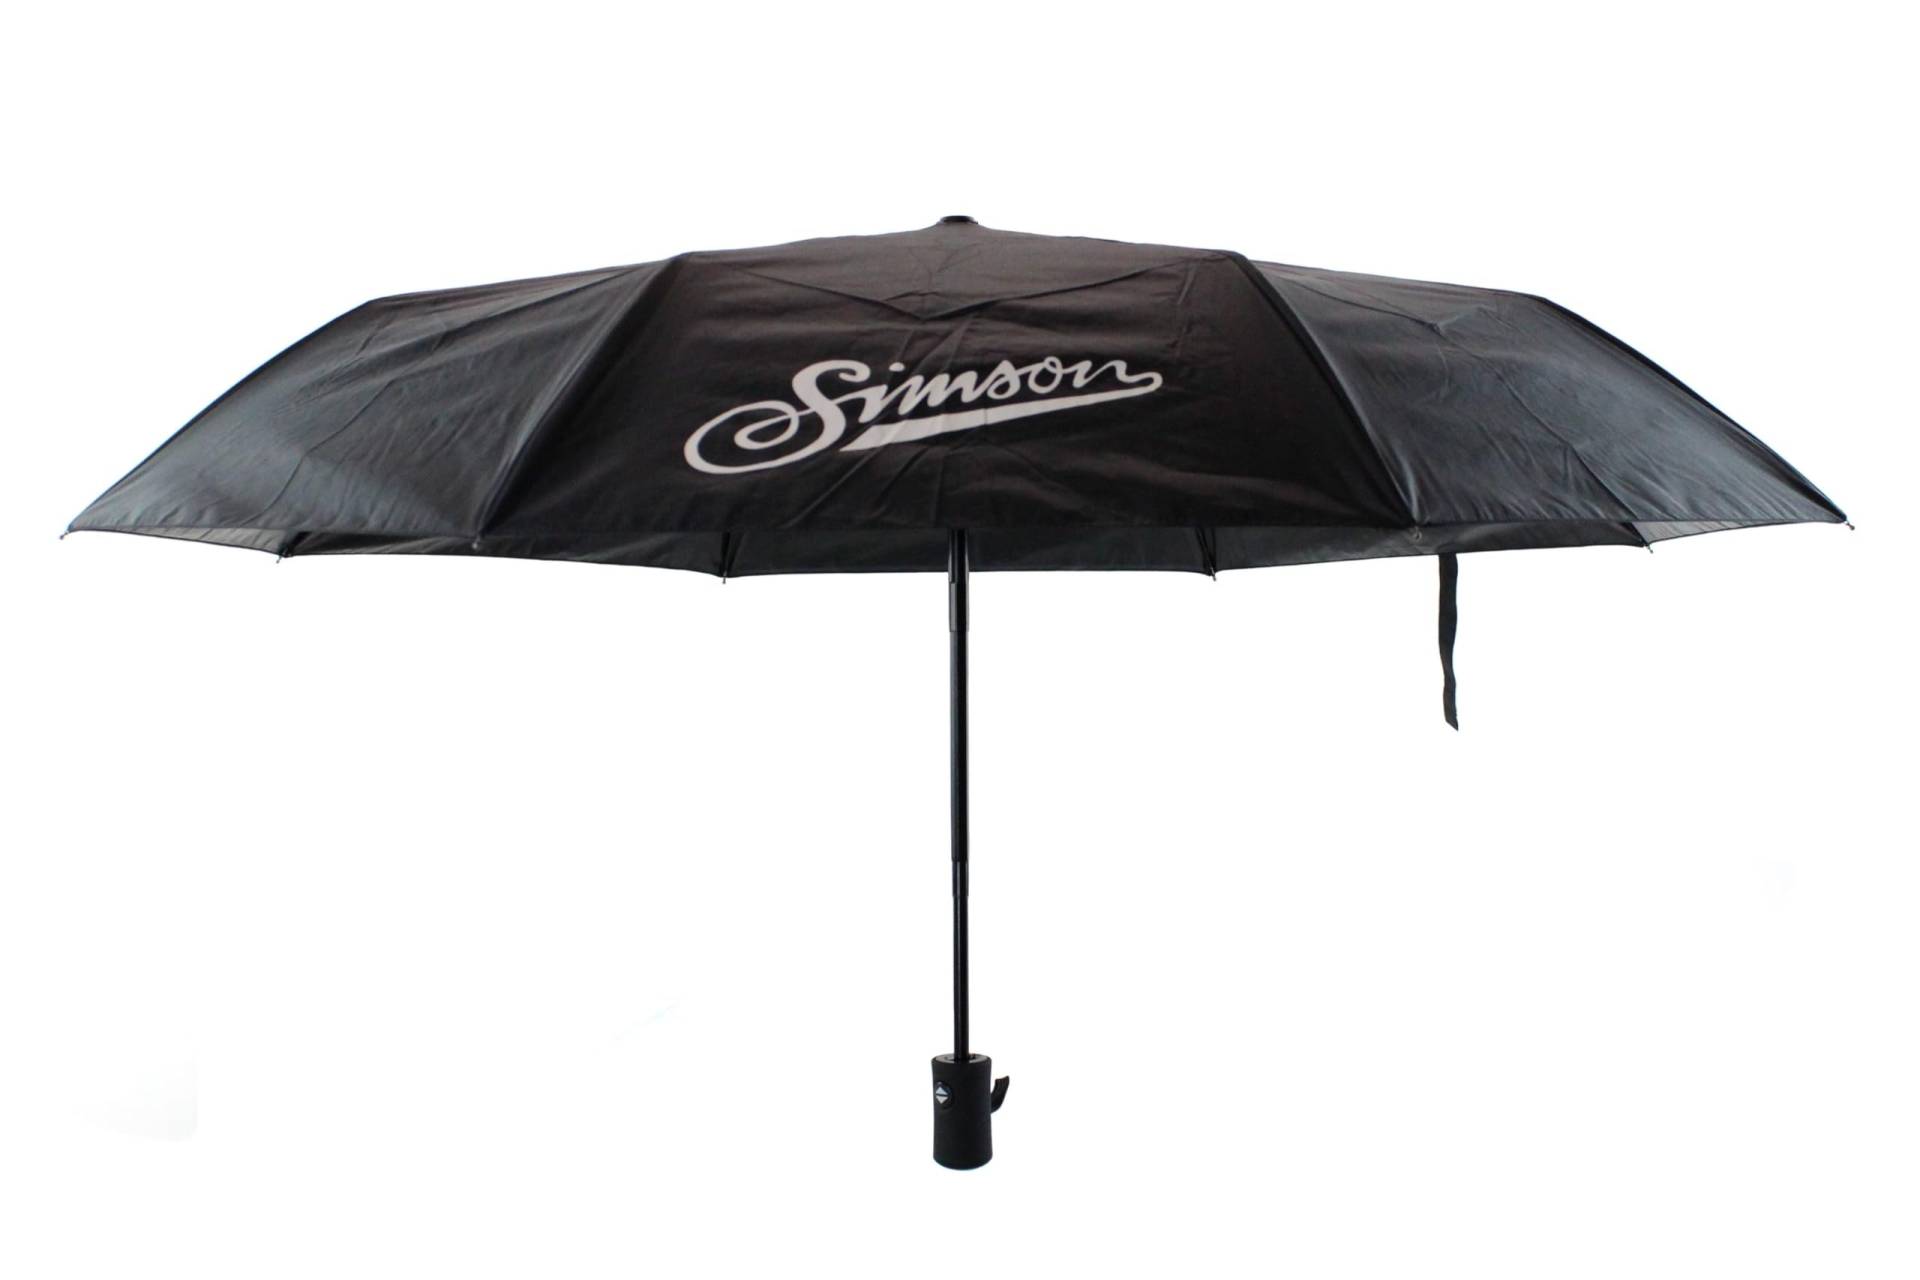 MZA Simson Regenschirm in schwarz mit Simson Logo - originaler Artikel - 98cm von MZA